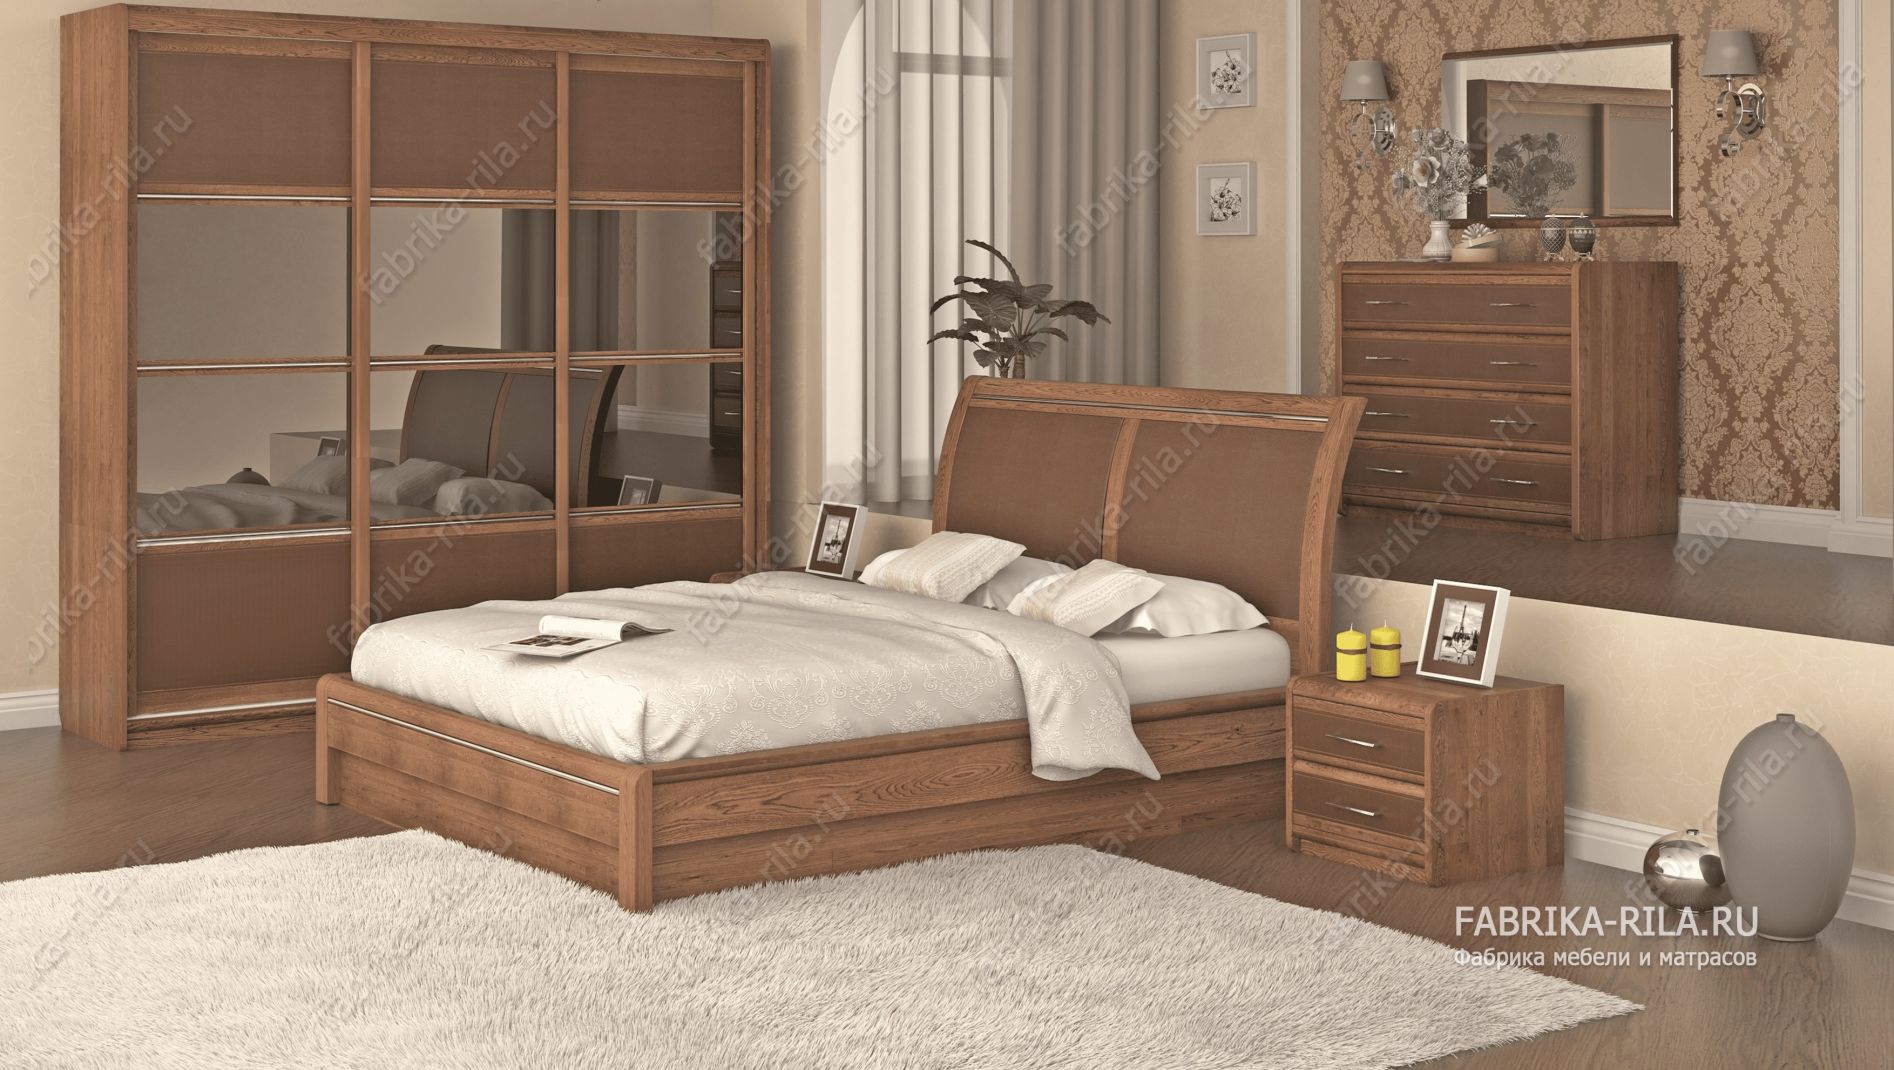 кровать Okaeri 6 см— 90x190 см. из березы